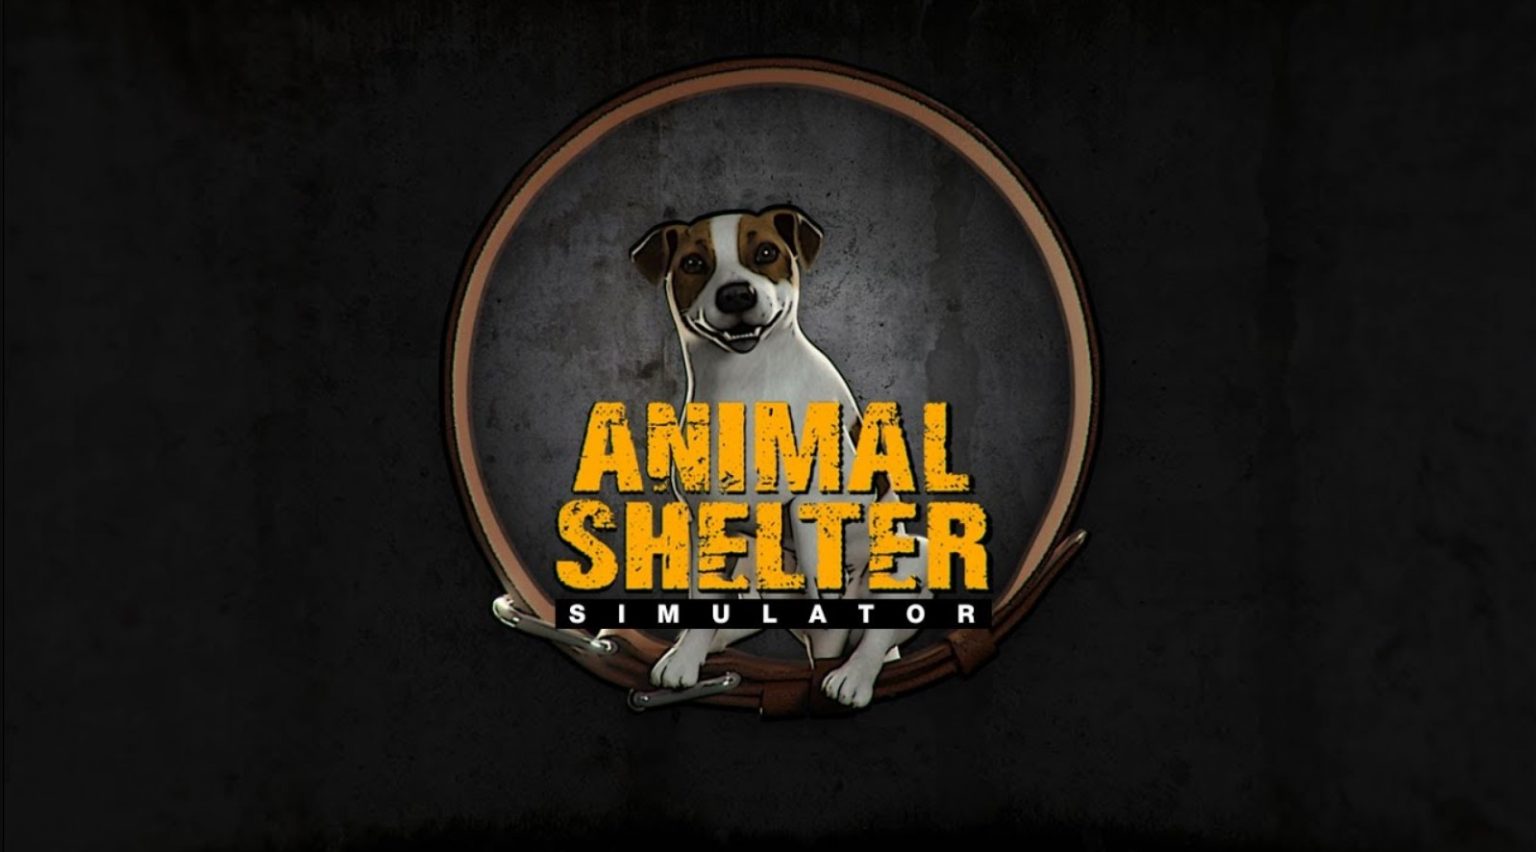 Animal shelter free Download PC Game (Full Version)